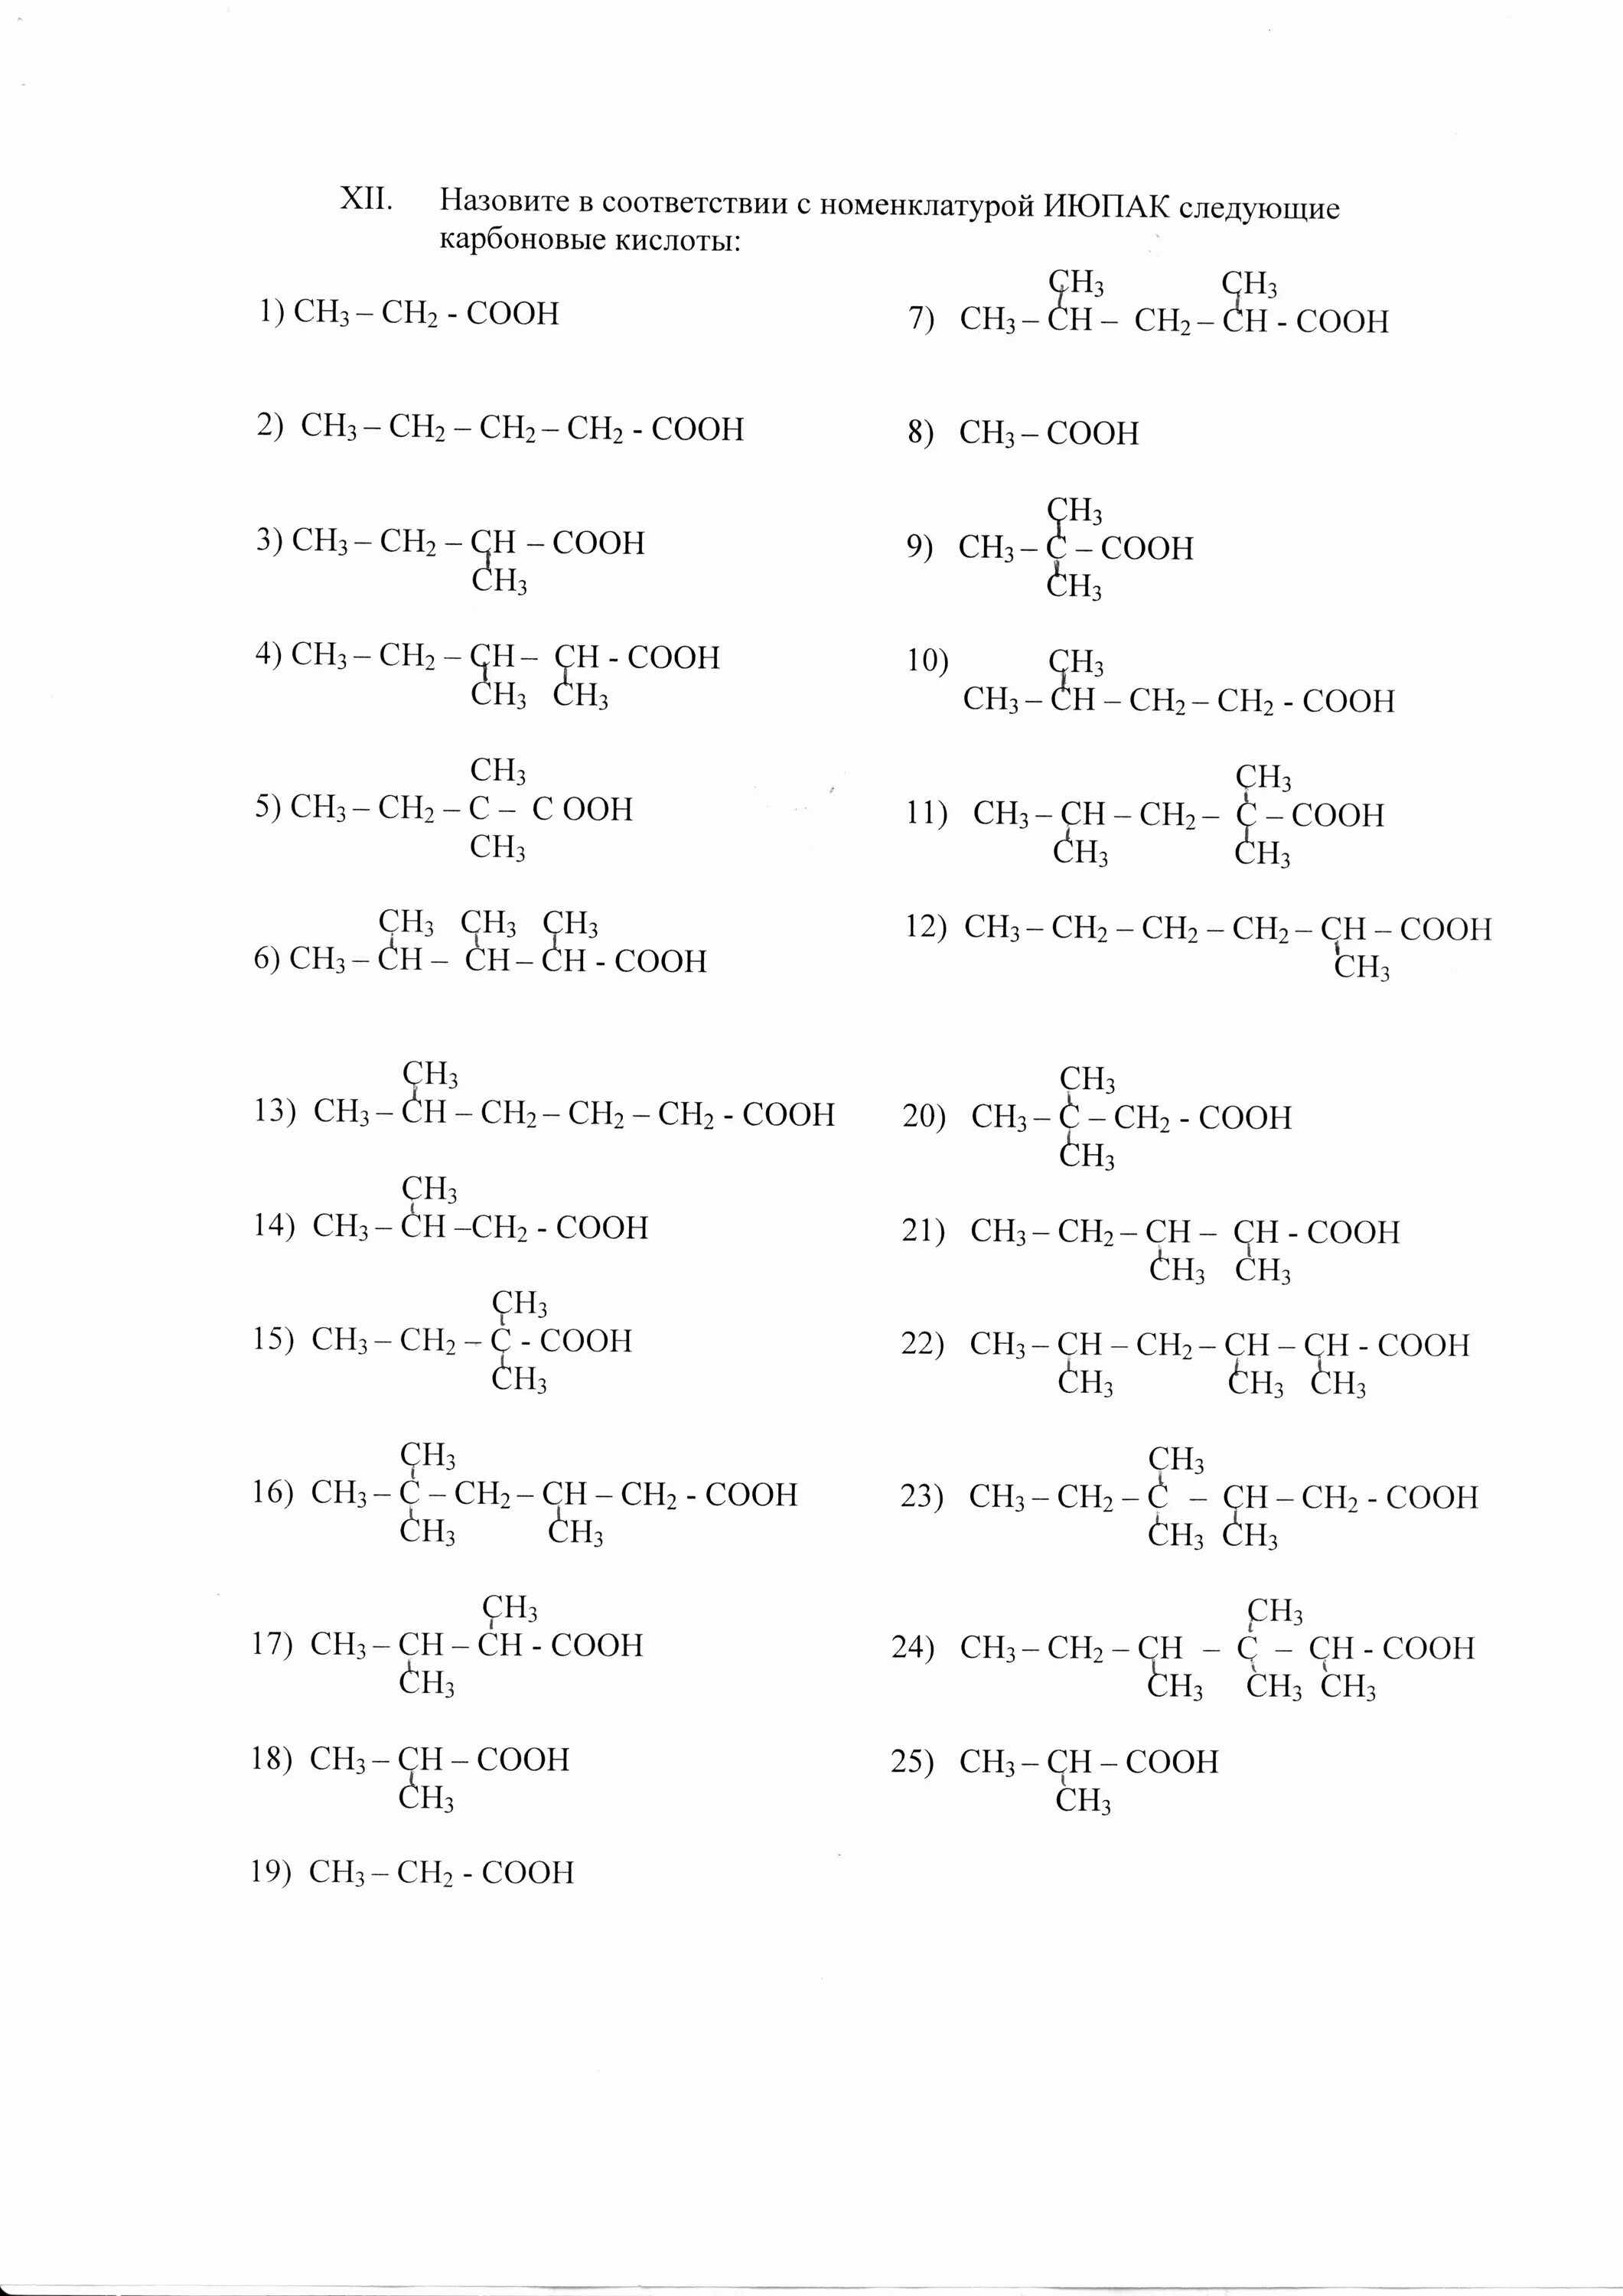 2 2 диметилпропановая кислота структурная формула. 2 3 4 Триметилгексановая кислота. 2 3 3 Триметилпентановая кислота структурная формула. 2 4 4 Триметилгексановая кислота. 2 4 4 Триметилгексановая структурная формула.